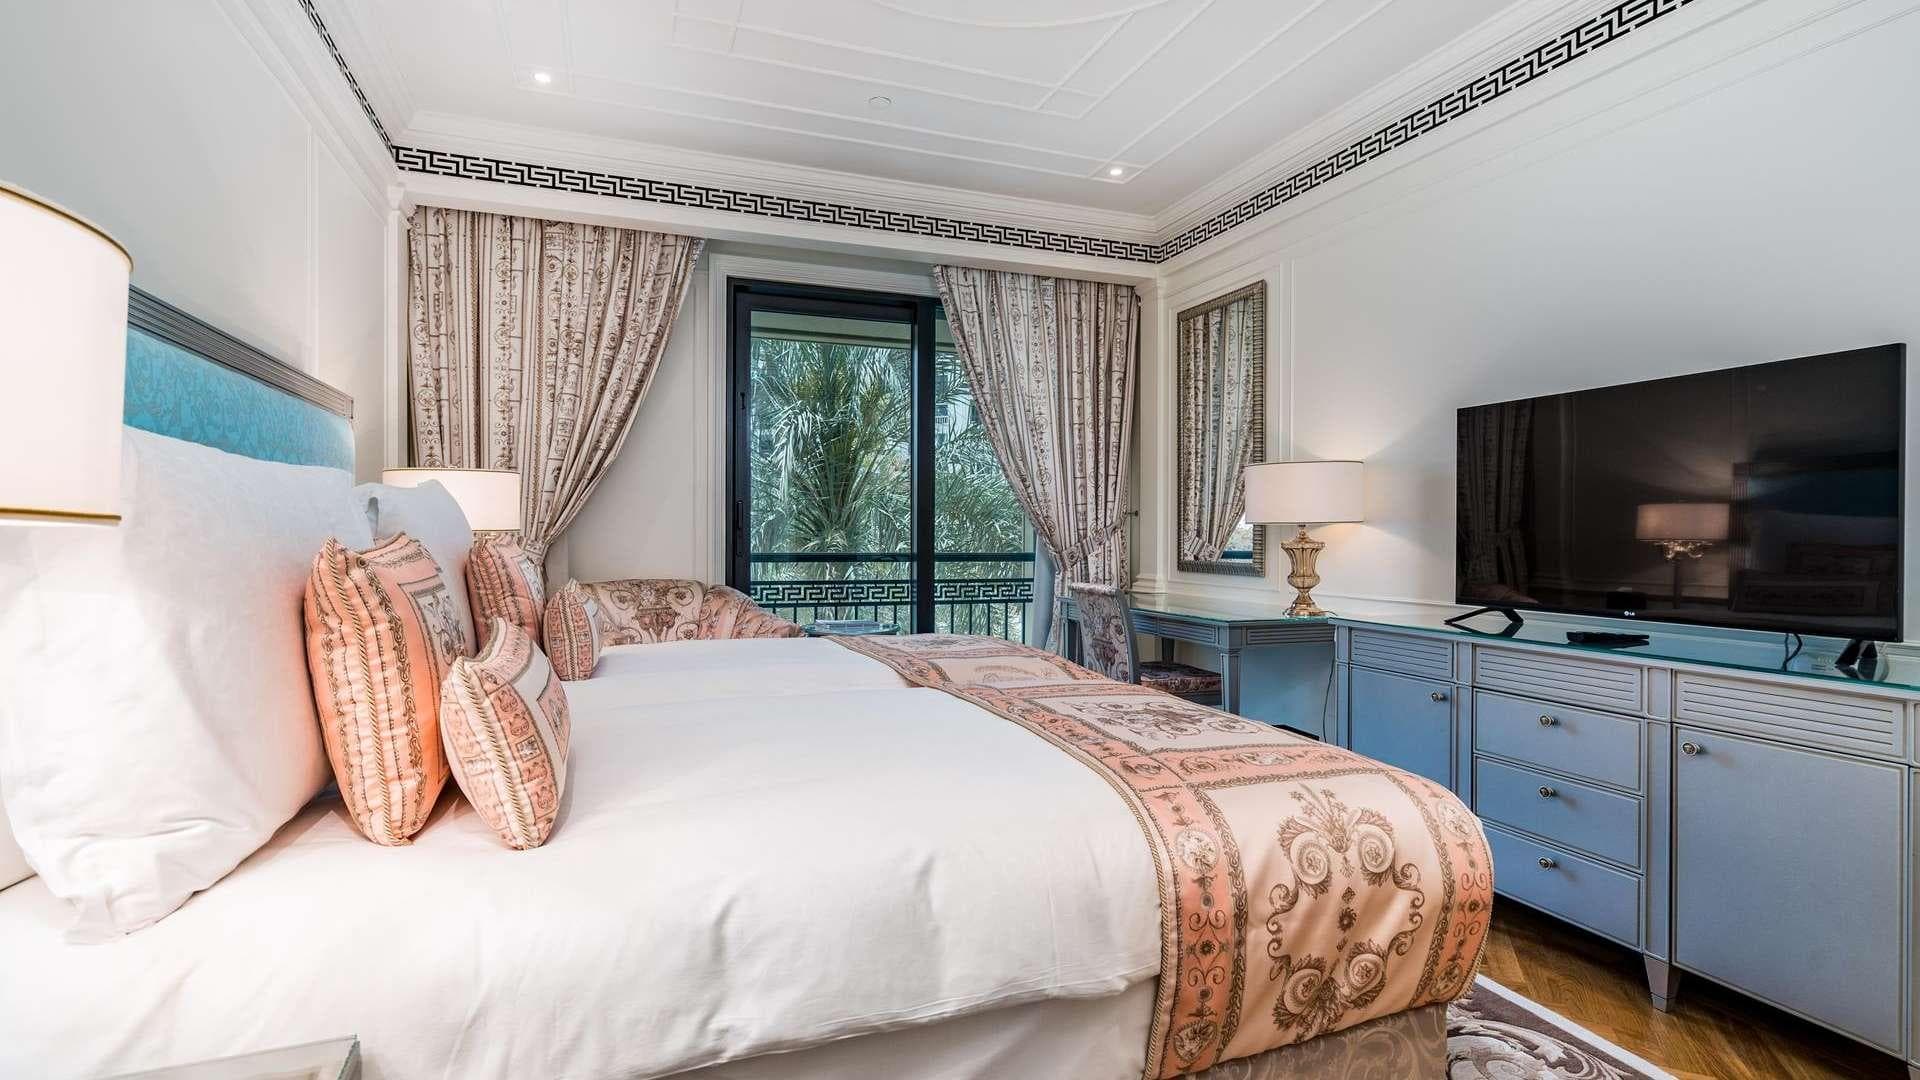 3 Bedroom Townhouse For Rent Palazzo Versace Lp14402 1ca632d897896100.jpg